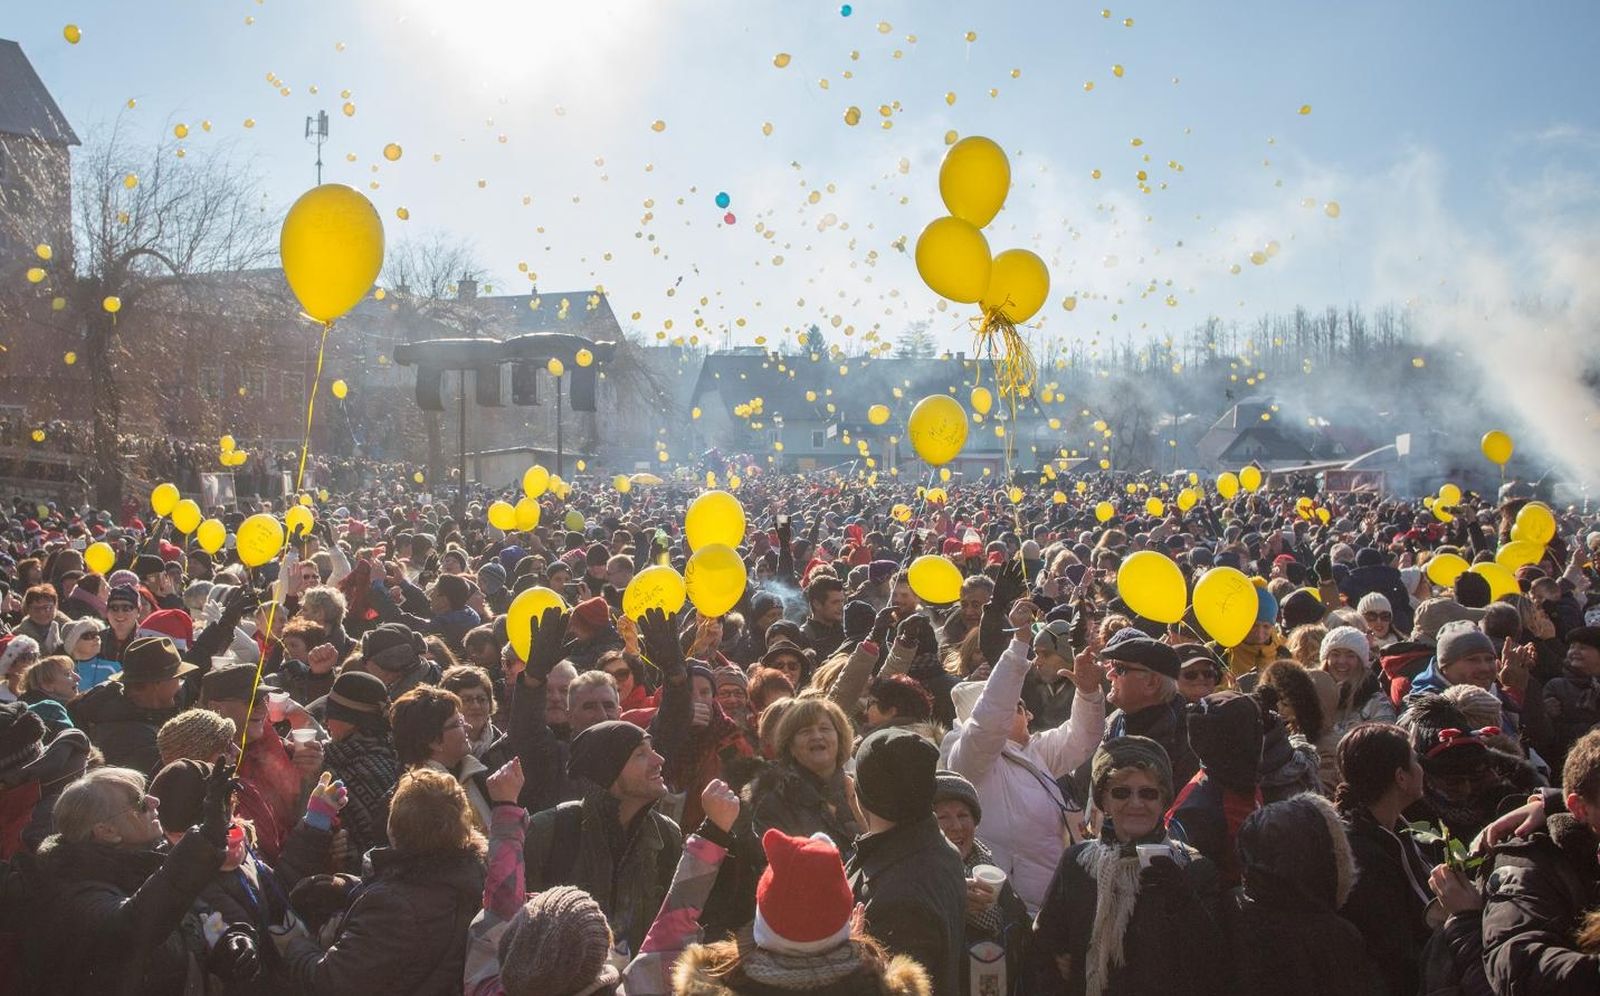 31.12.2015. Fuzine - Tradicionalni docek Nove godine u Fuzinama slavi tocno u podne vec 16 godina. Novost ovogodisnjeg podnevnog doceka bila je mogucnost kupnje balona na koje su se ispisivale novogodisnje zelje, a svi su pusteni u zrak tocno u podne. Dio prihoda od prodanih balona ide u humanitarne svrhe. 
Photo: Nel Pavletic/PIXSELL